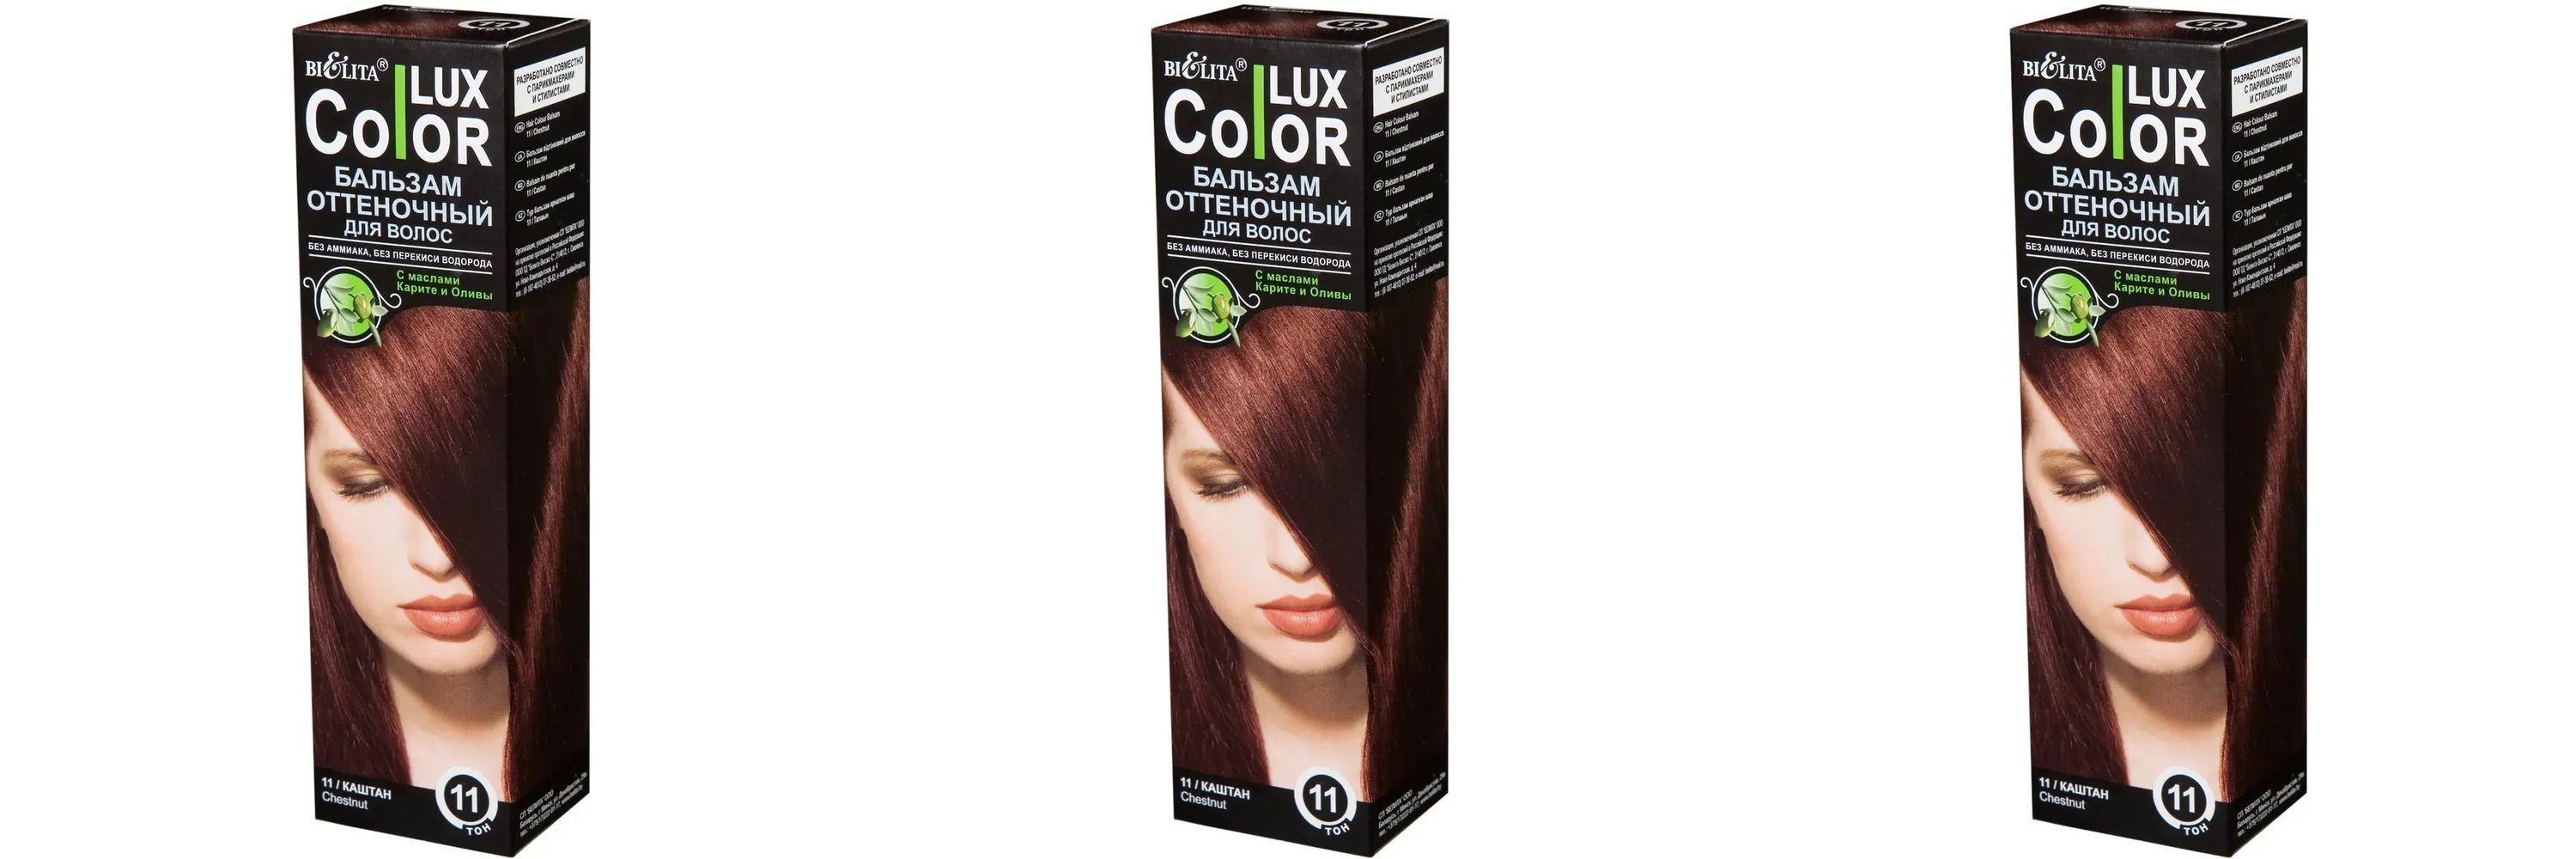 Белита Color lux Бальзам для волос оттеночный тон 11 каштан 100 мл,3шт